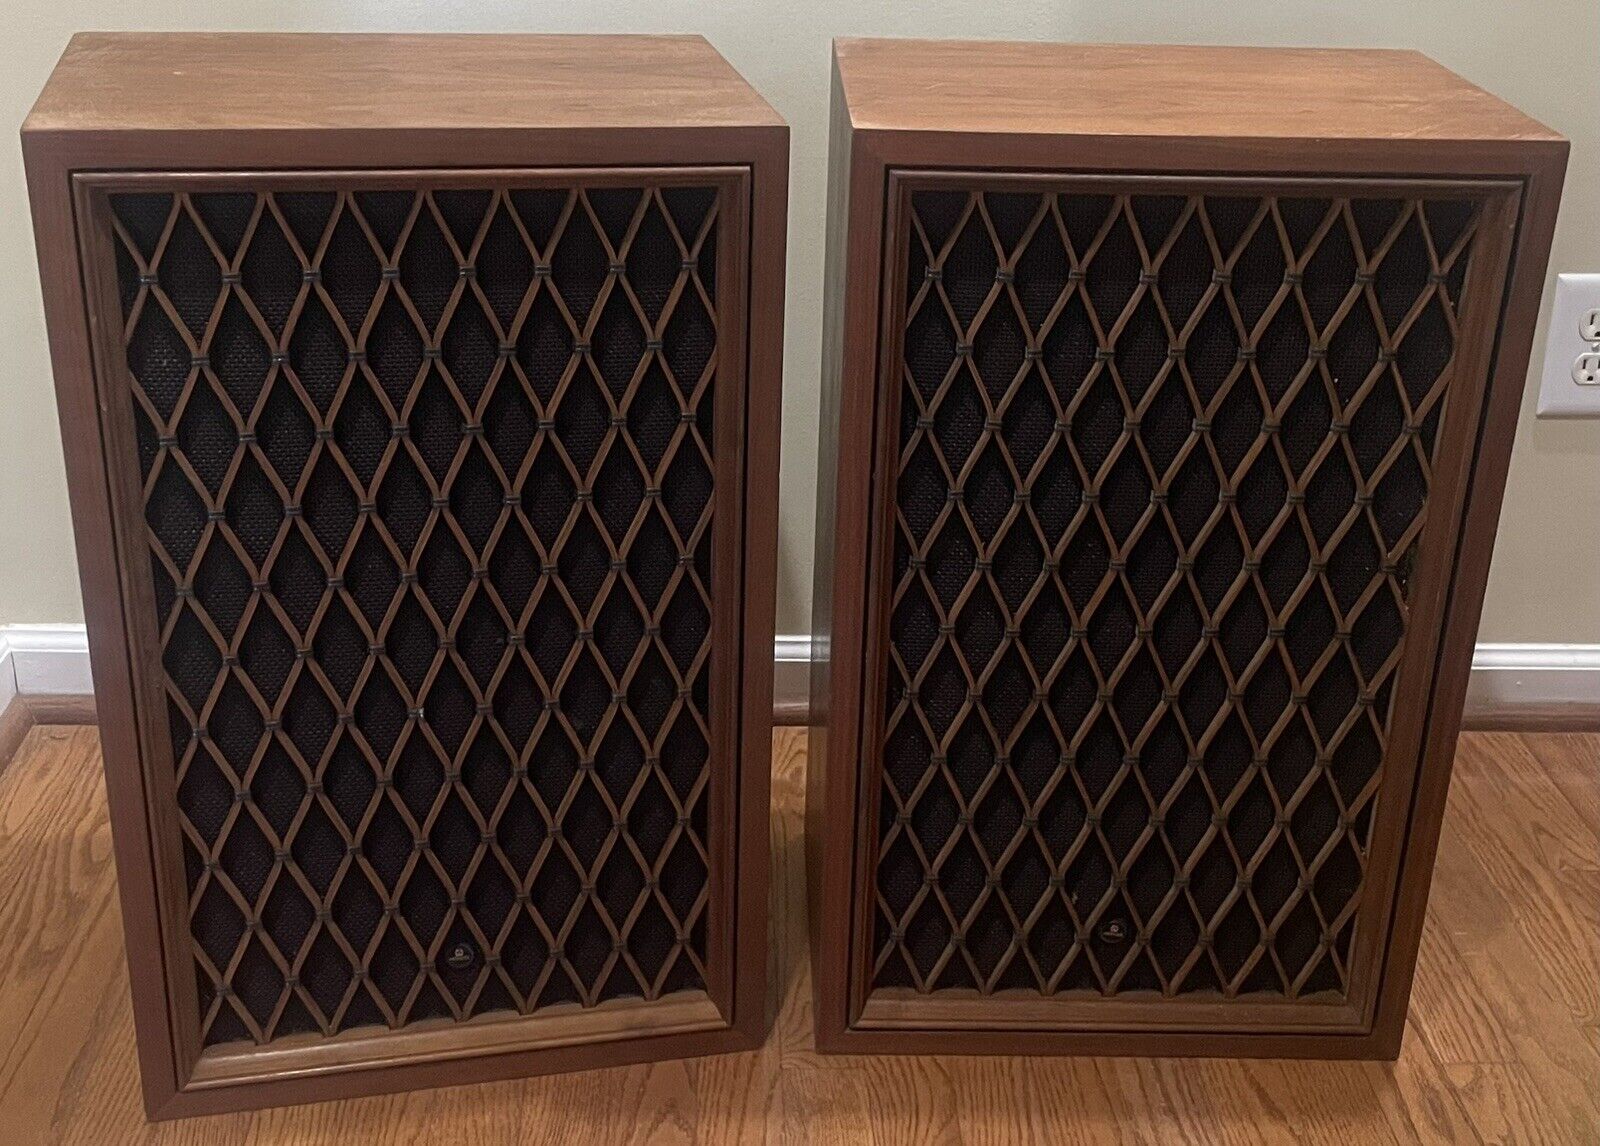 Vintage Pair of Pioneer CS-99 5 Way Speakers Walnut Cabinets Japan Amazing Sound